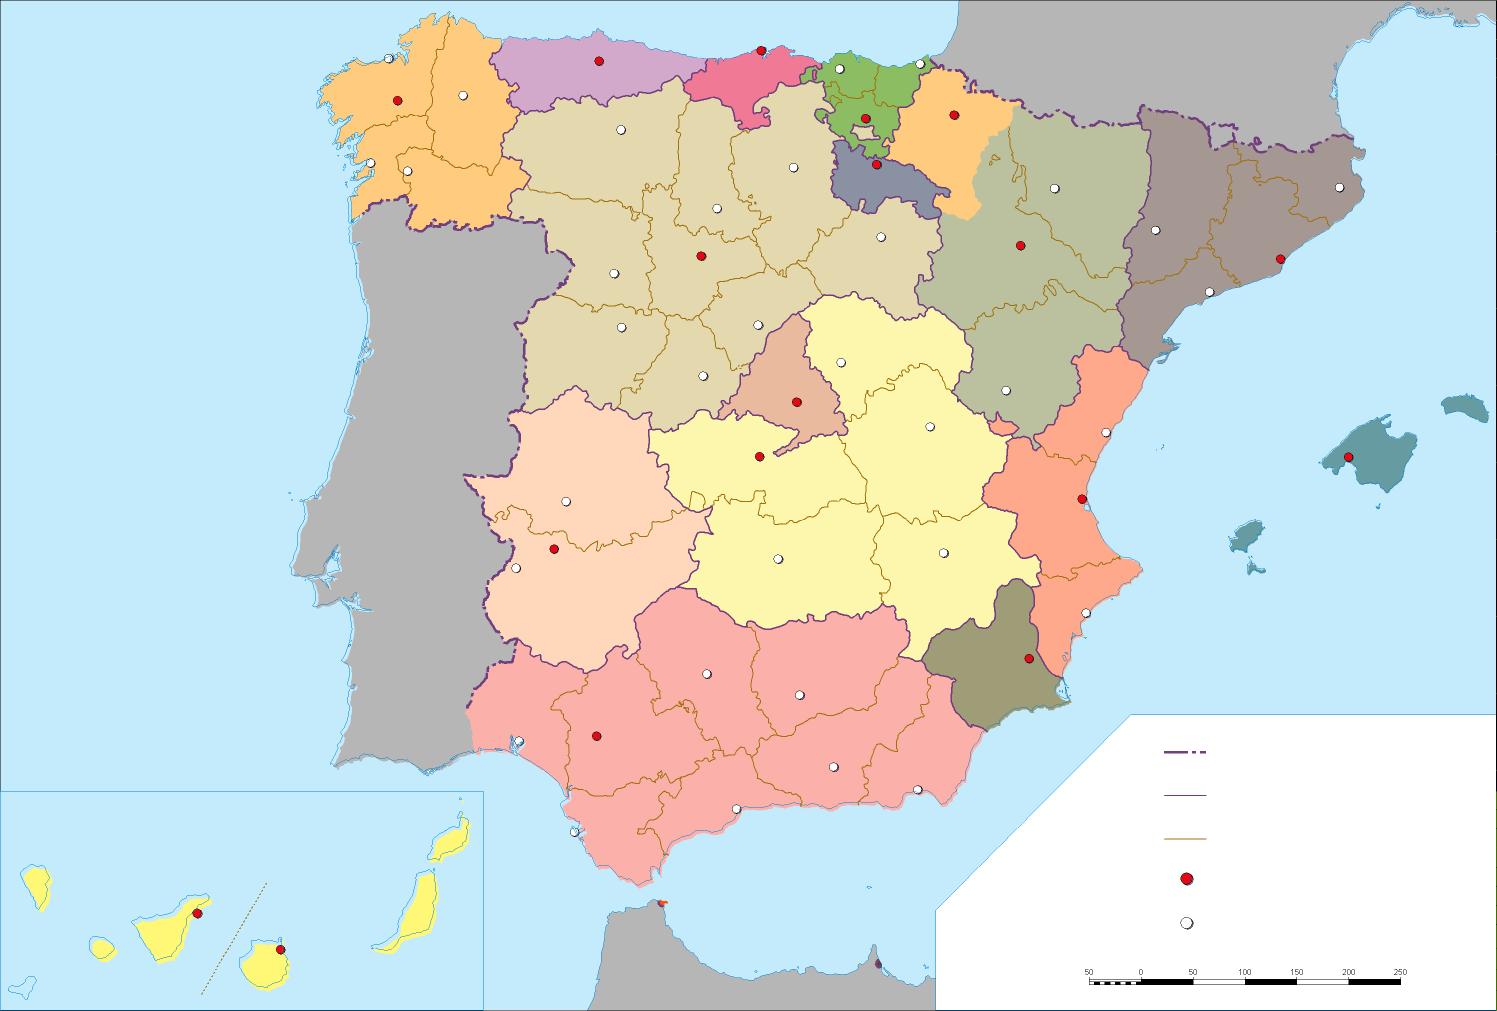 Mapa De España Mapa Político De España Sin Nombres